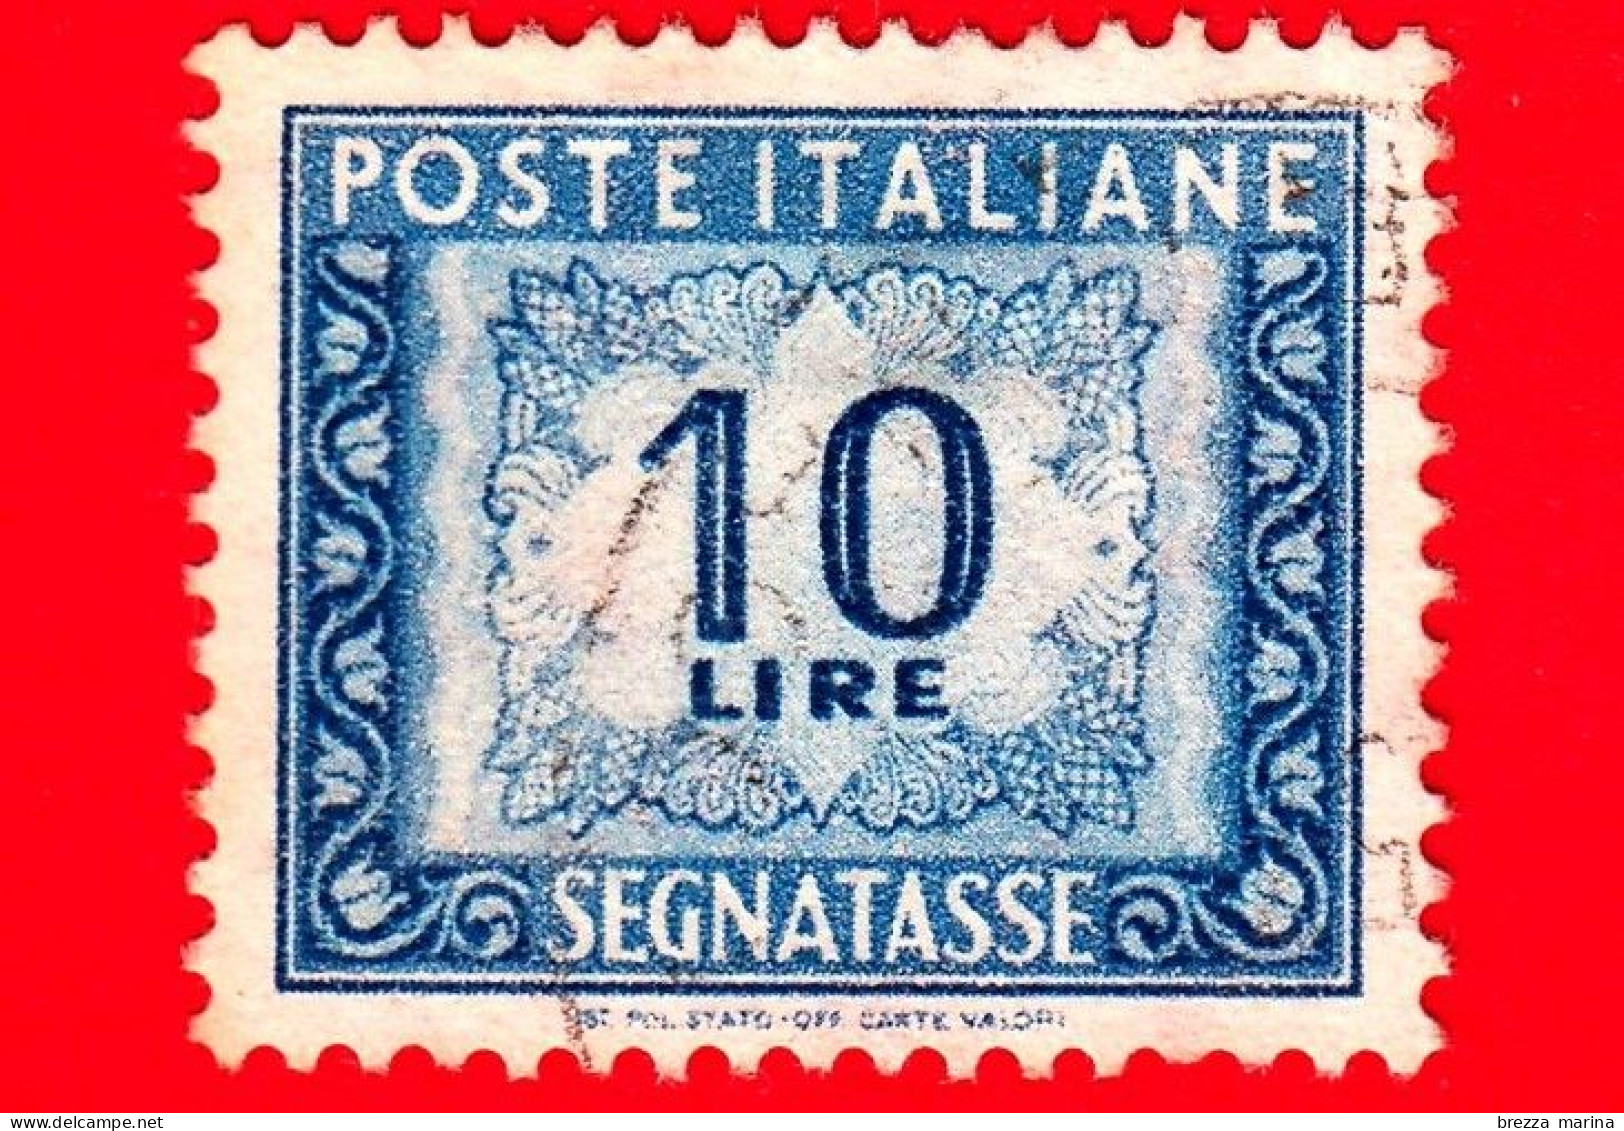 ITALIA - Usato - 1955 - Cifra E Decorazioni, Filigrana Stelle - Segnatasse - Cifra E Decorazioni - 10 L. - Impuestos